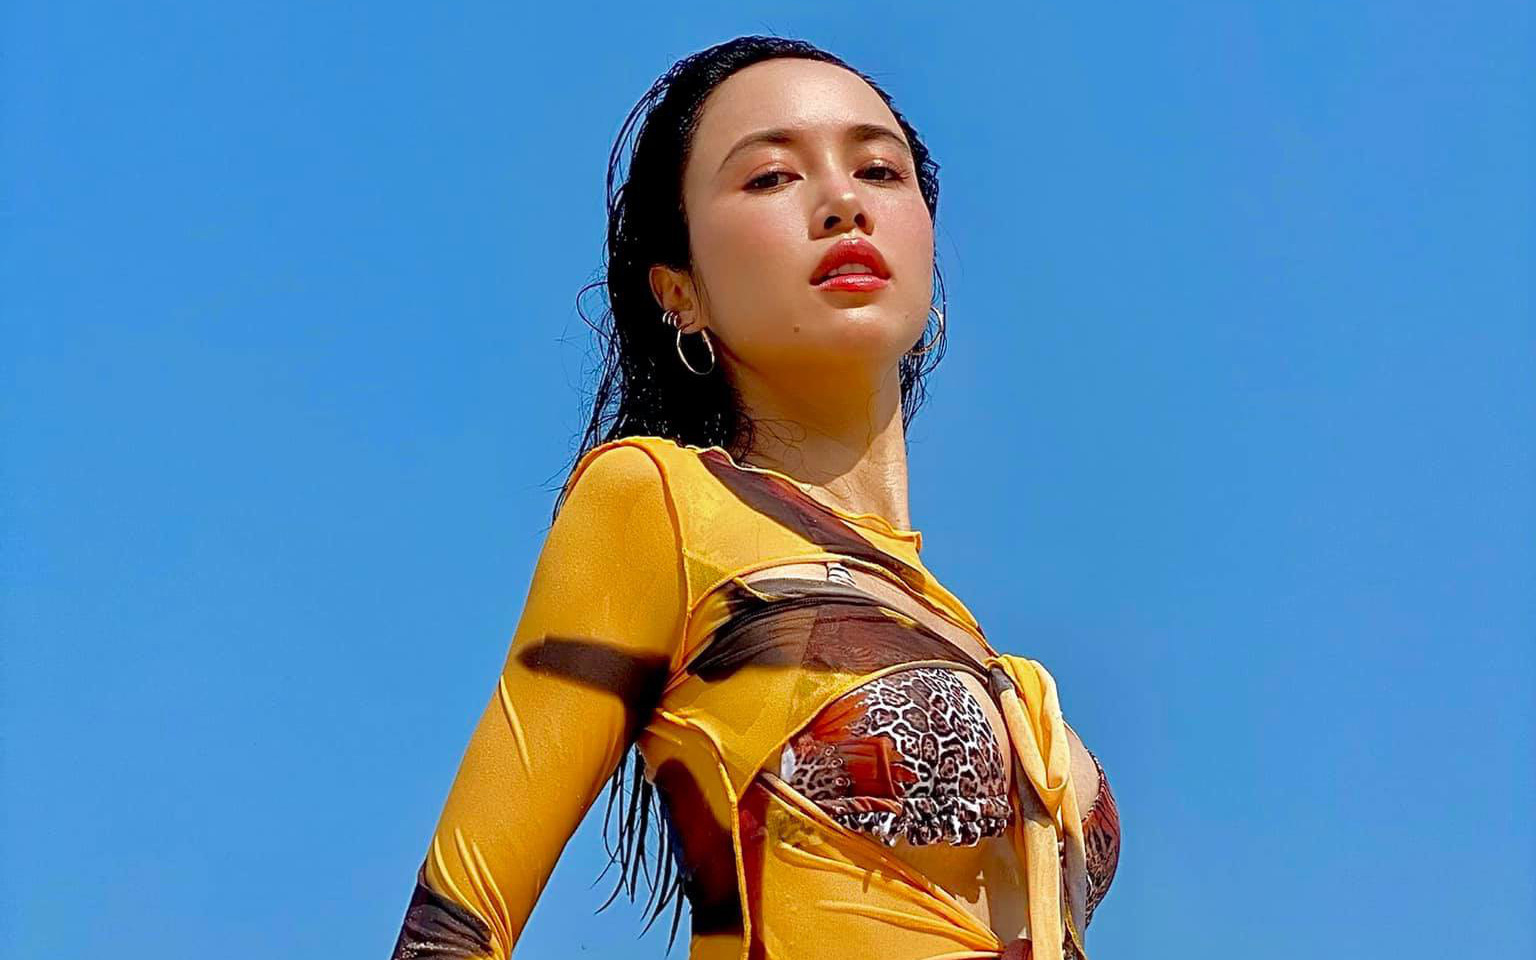 Vóc dáng đáng mơ ước của Vũ Ngọc Anh - "Quả bom sexy" của showbiz Việt từng được ông bầu Vũ Khắc Tiệp khen ngợi